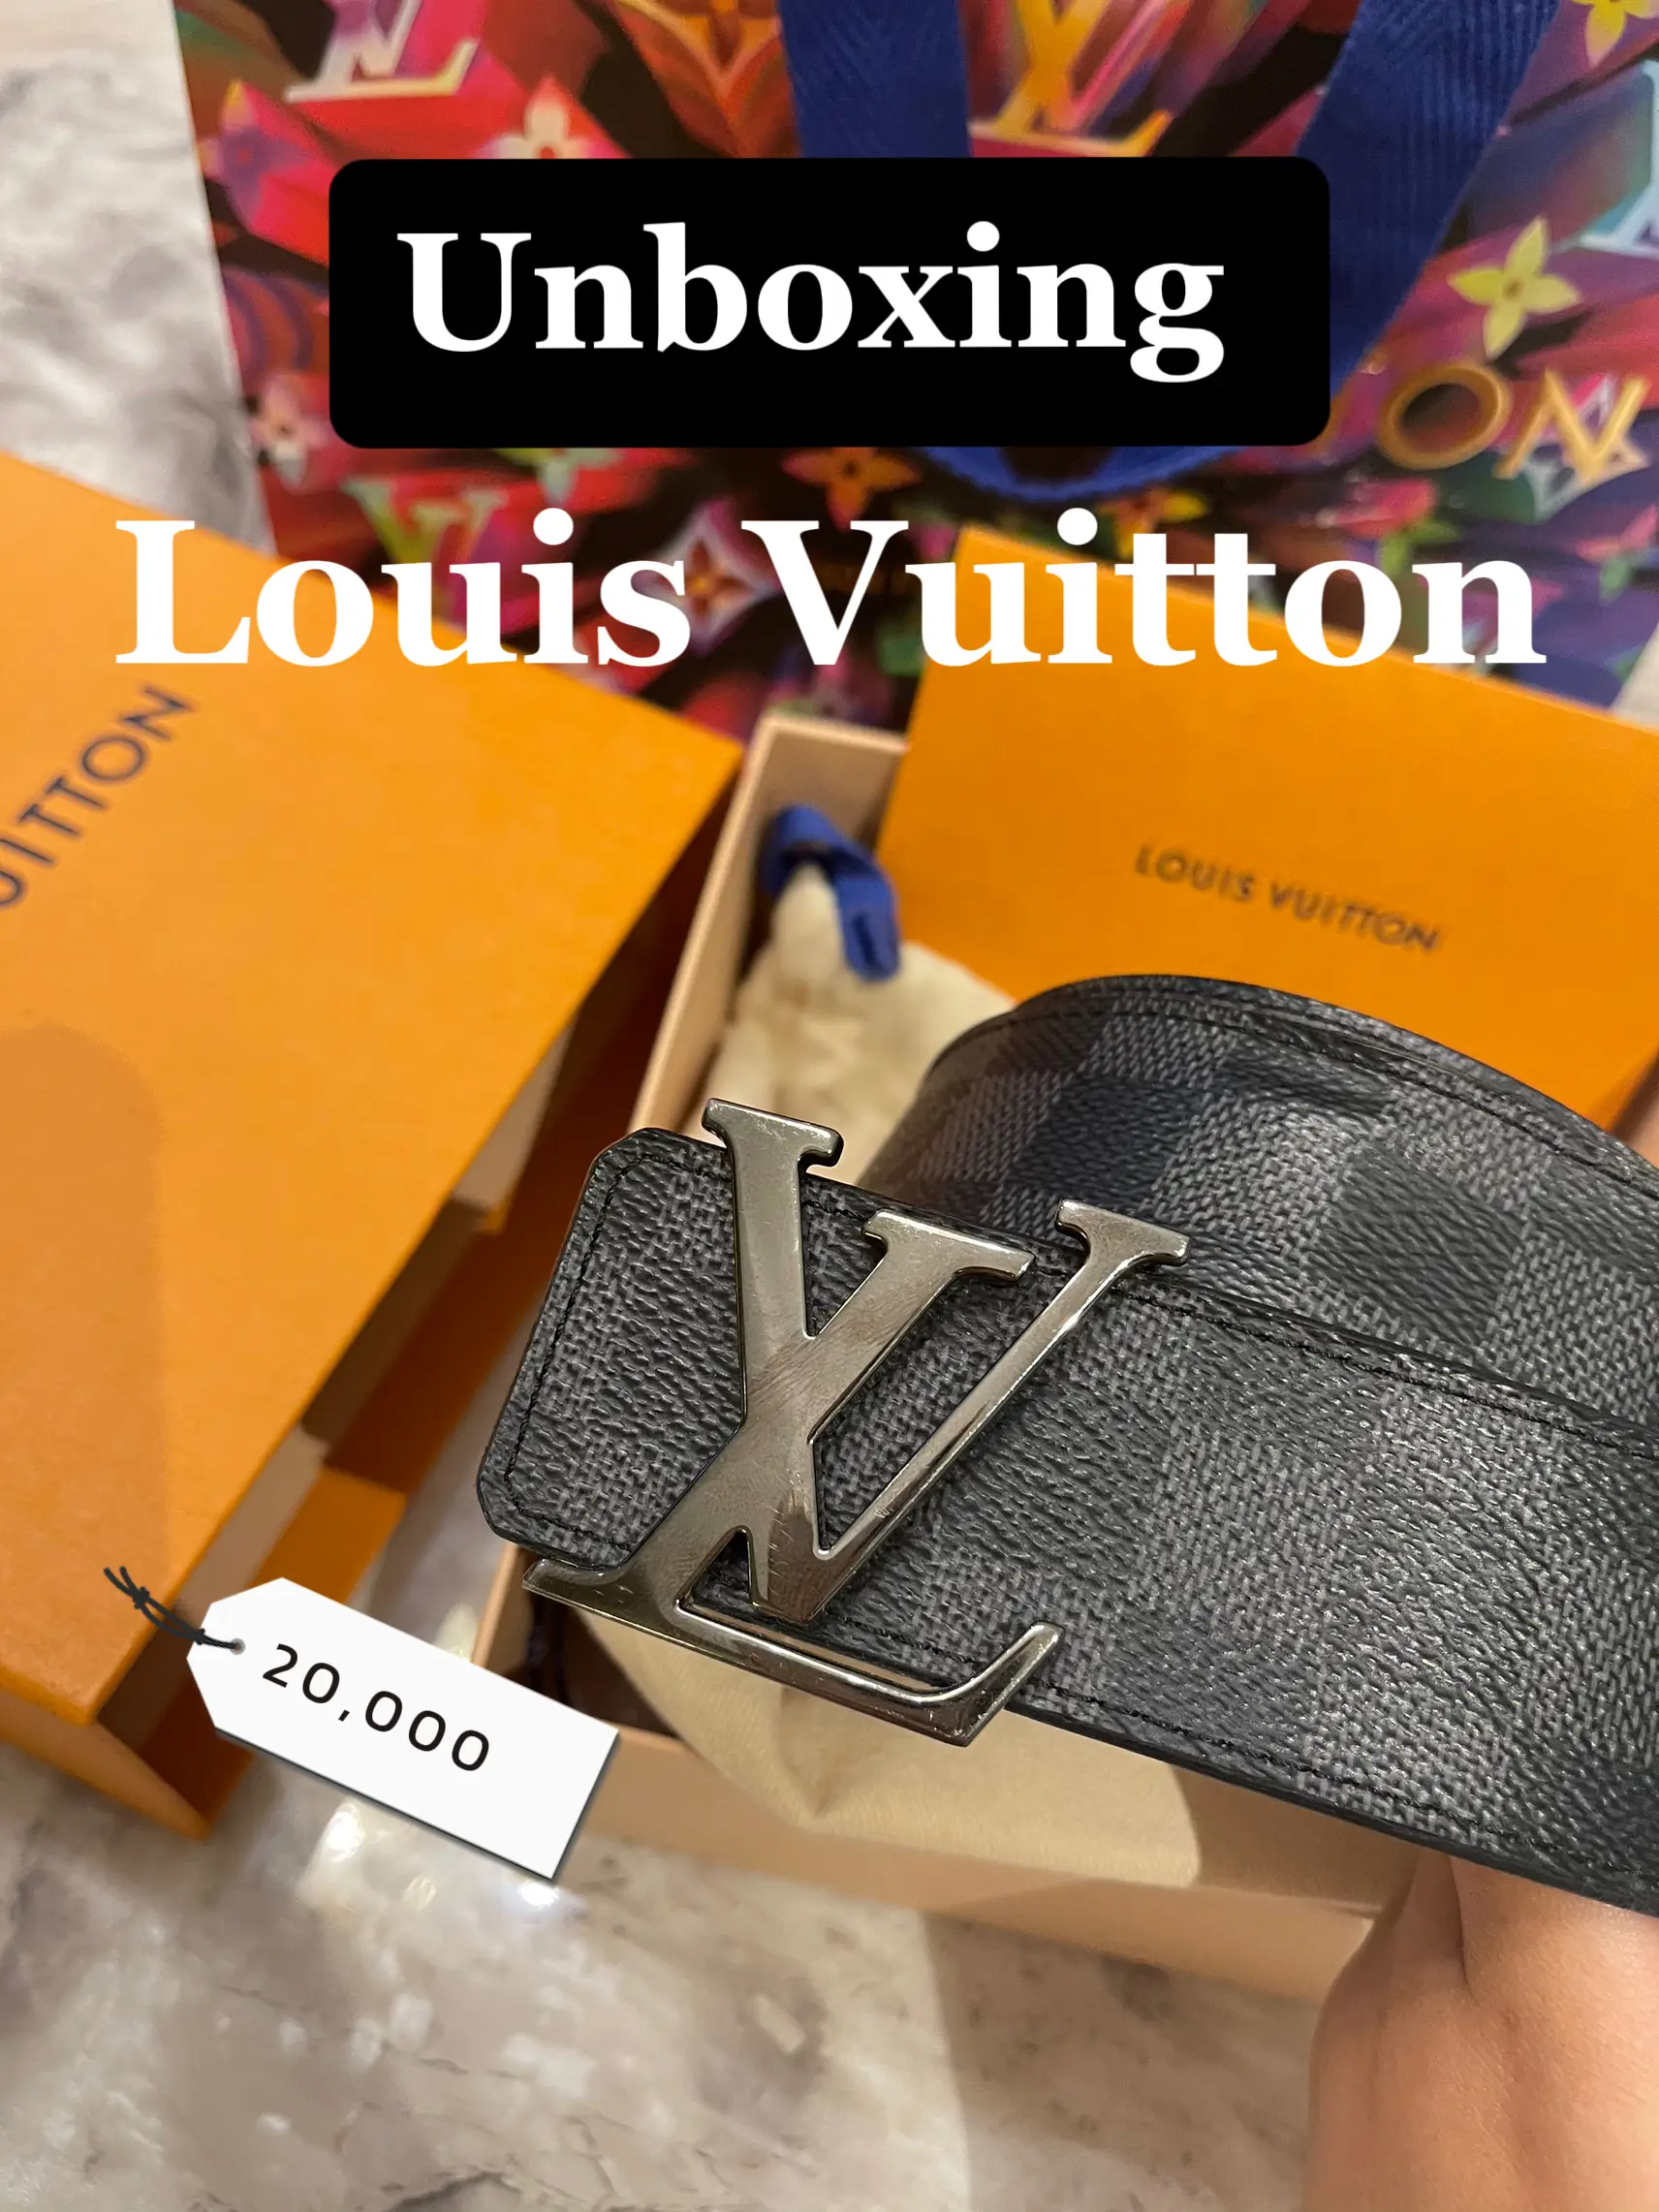 UNBOXING] Louis Vuitton Bandoulière Strap 